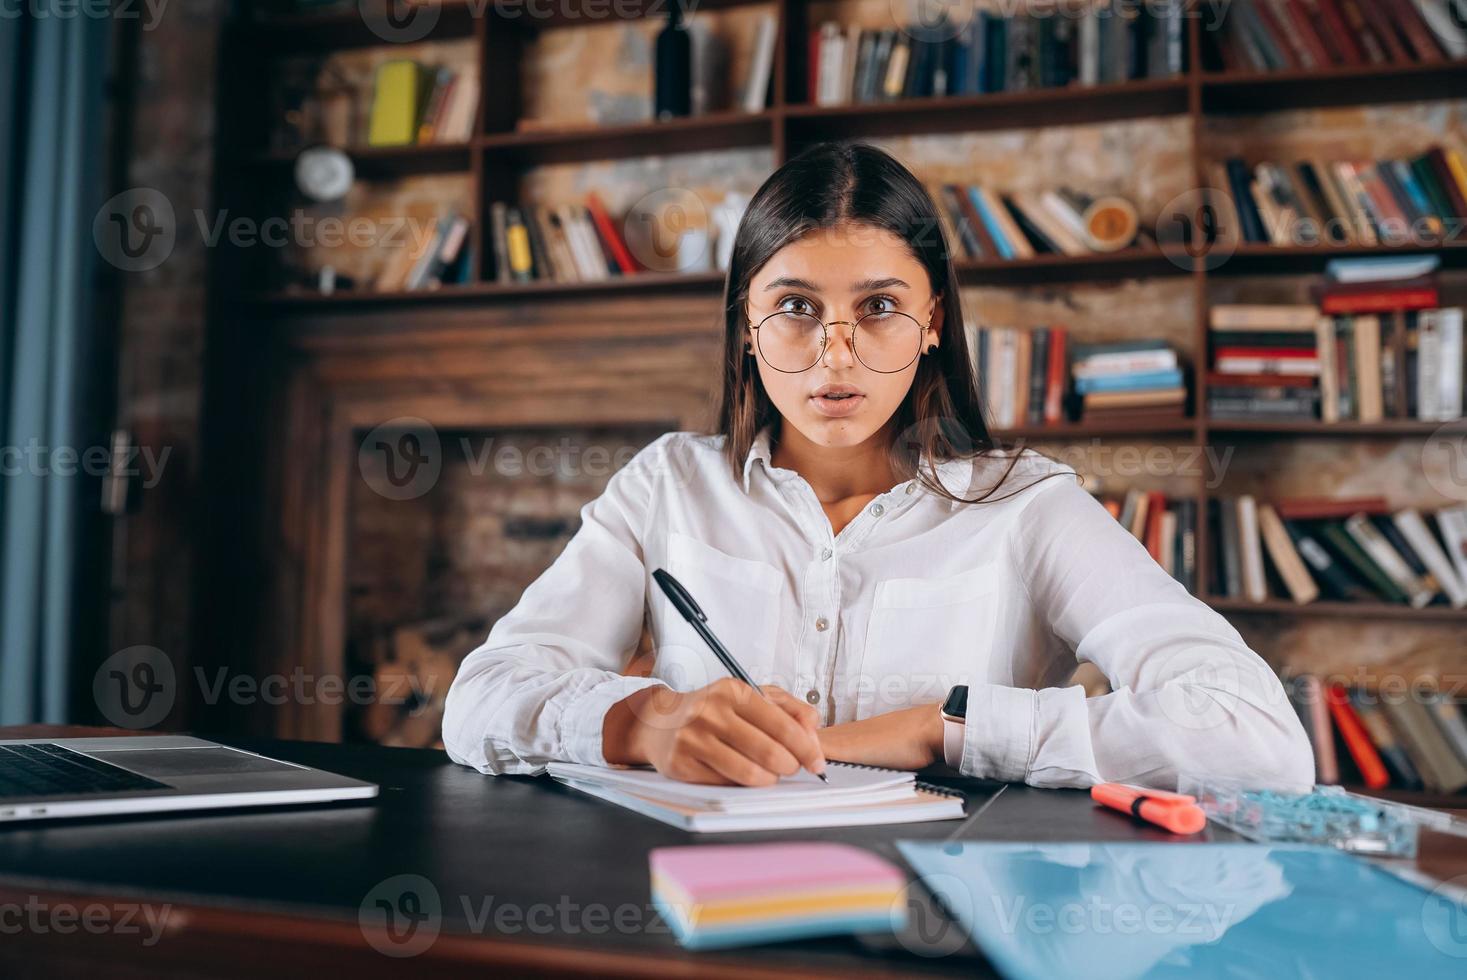 junge Frau mit Brille schreibt in ein Notizbuch, während sie am Tisch sitzt foto